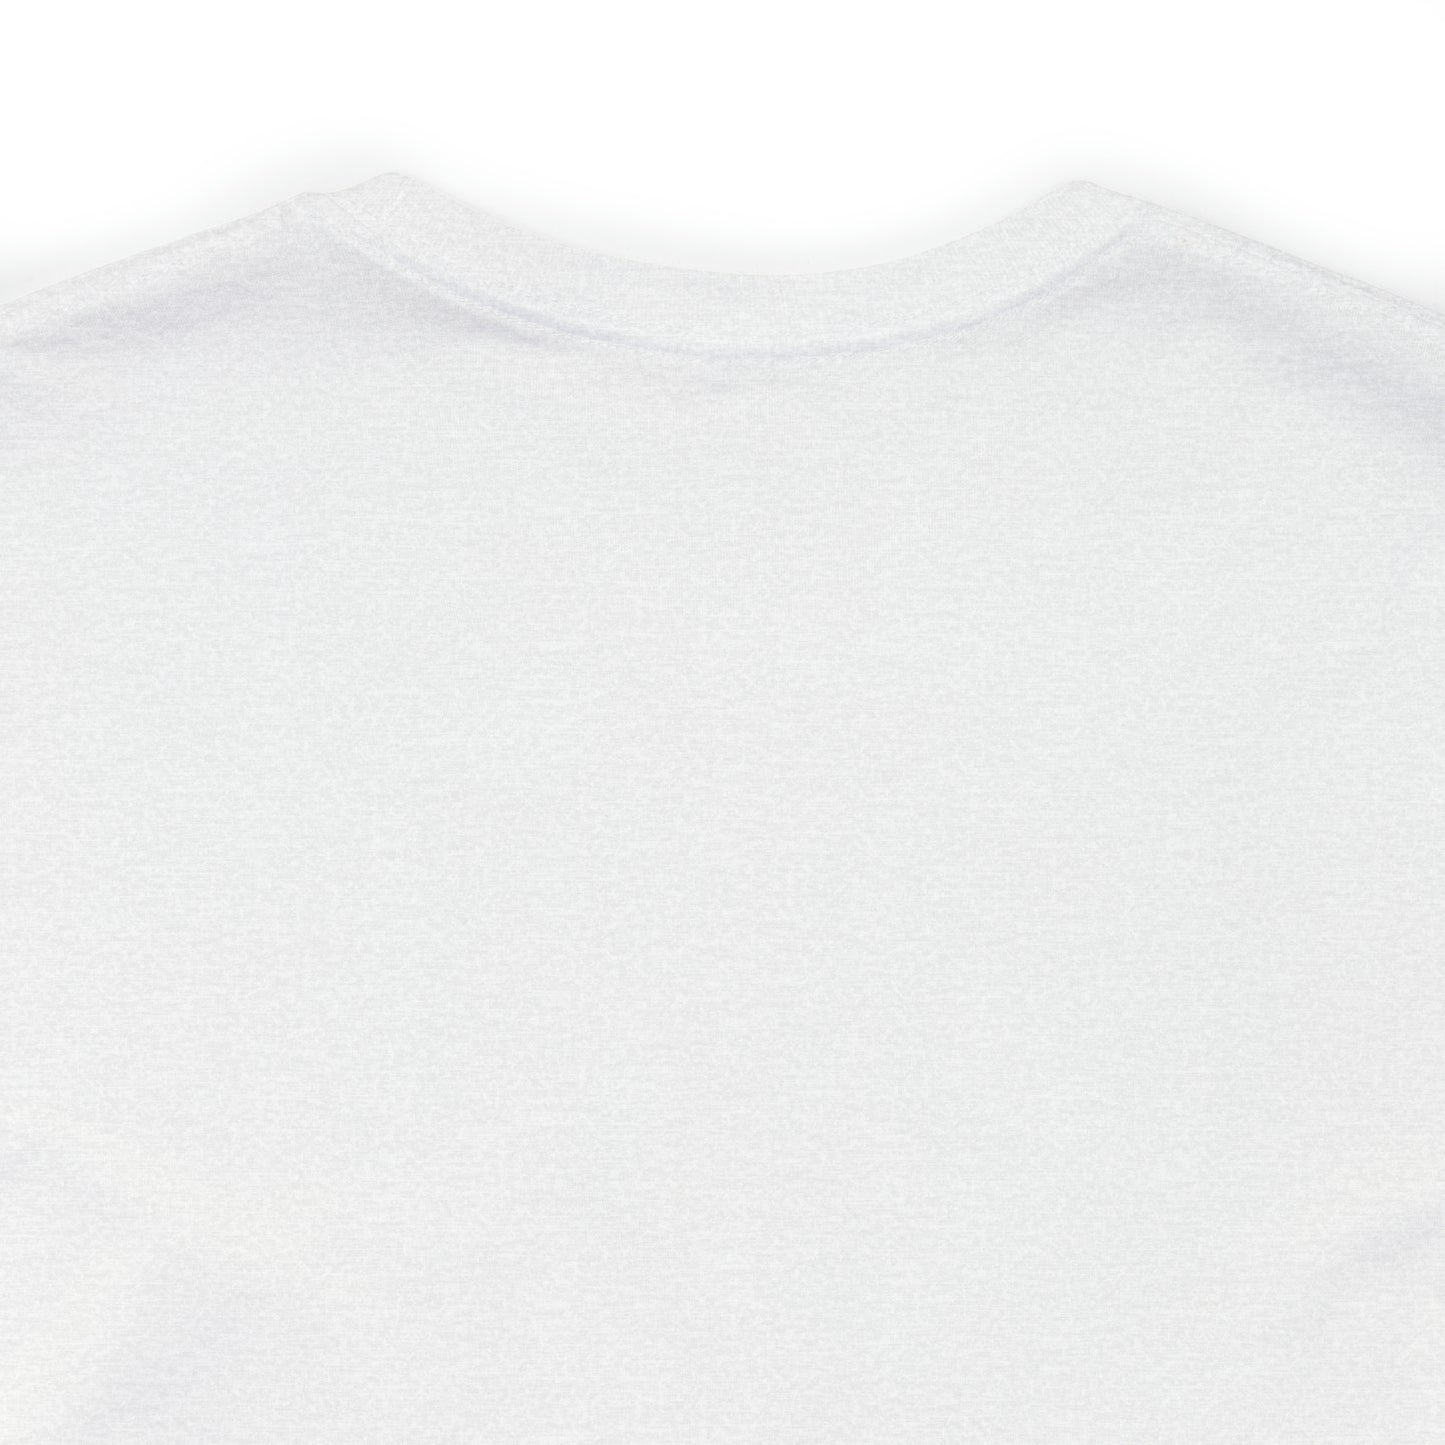 Dracut, Mass Pickleball Short Sleeve T-Shirt